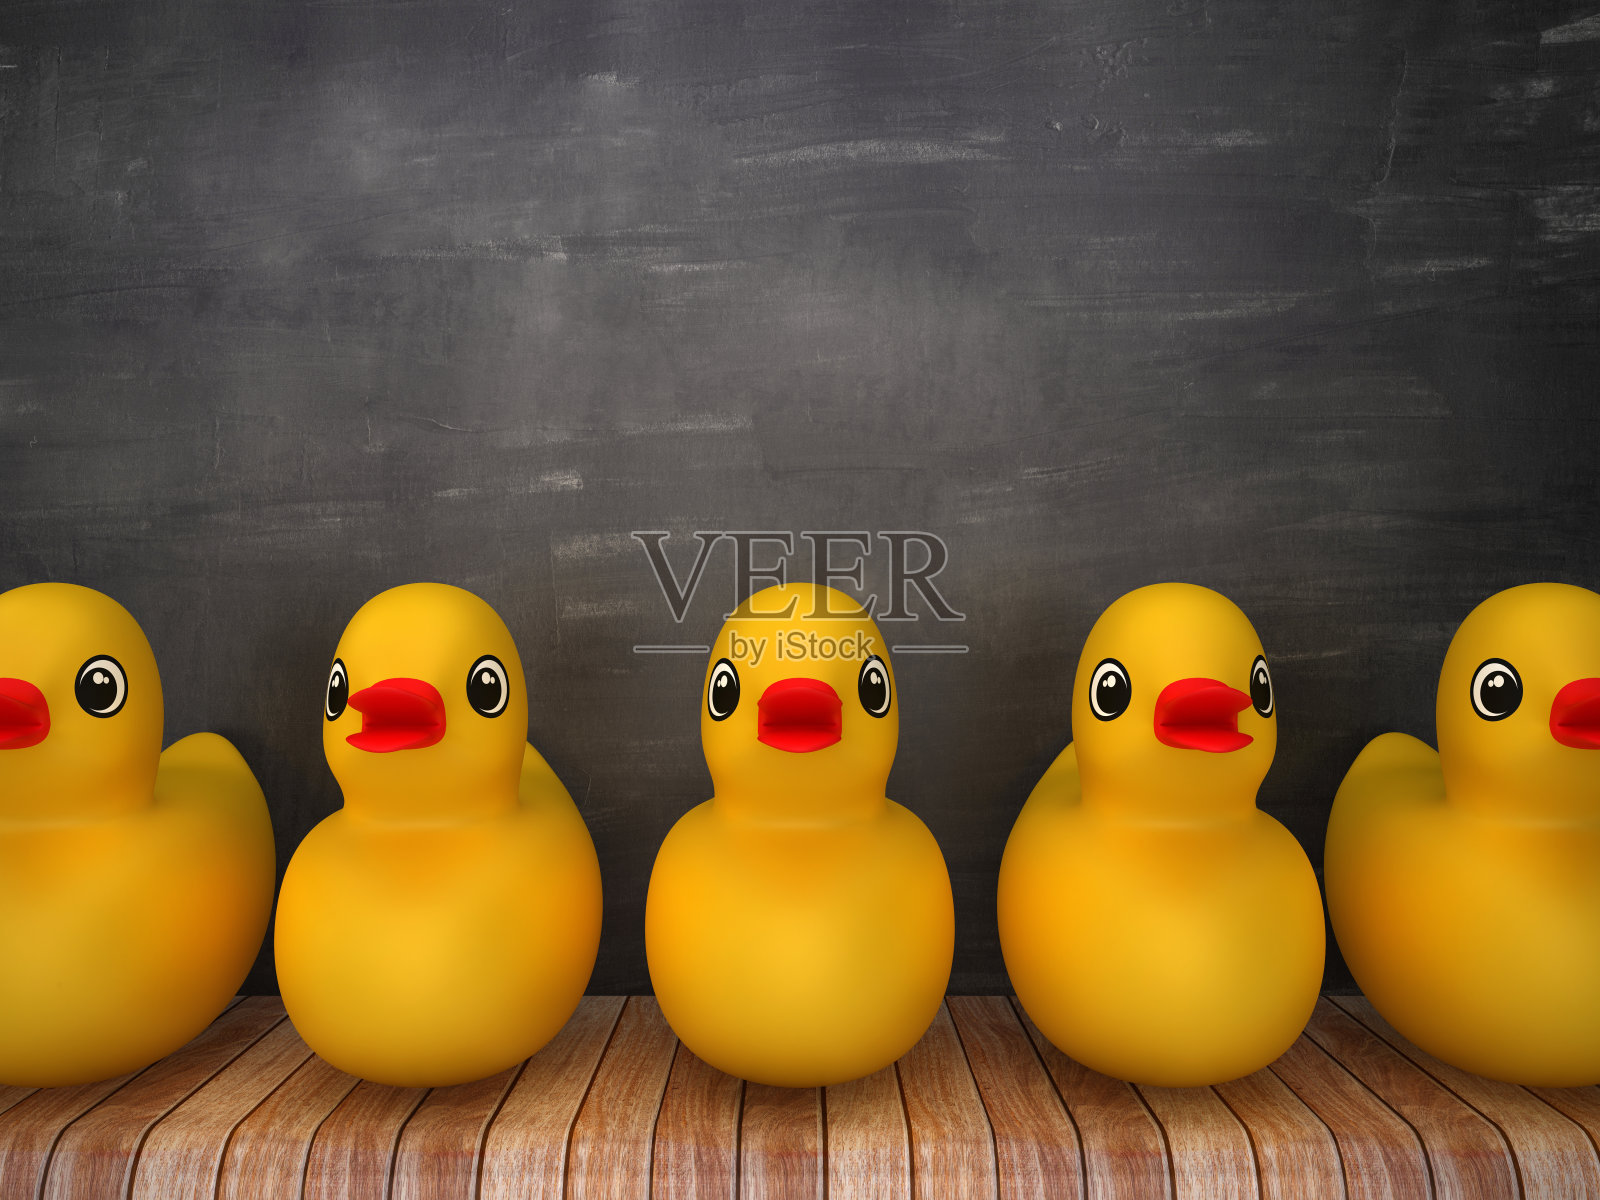 木地板上的橡胶鸭子-黑板背景- 3D渲染照片摄影图片